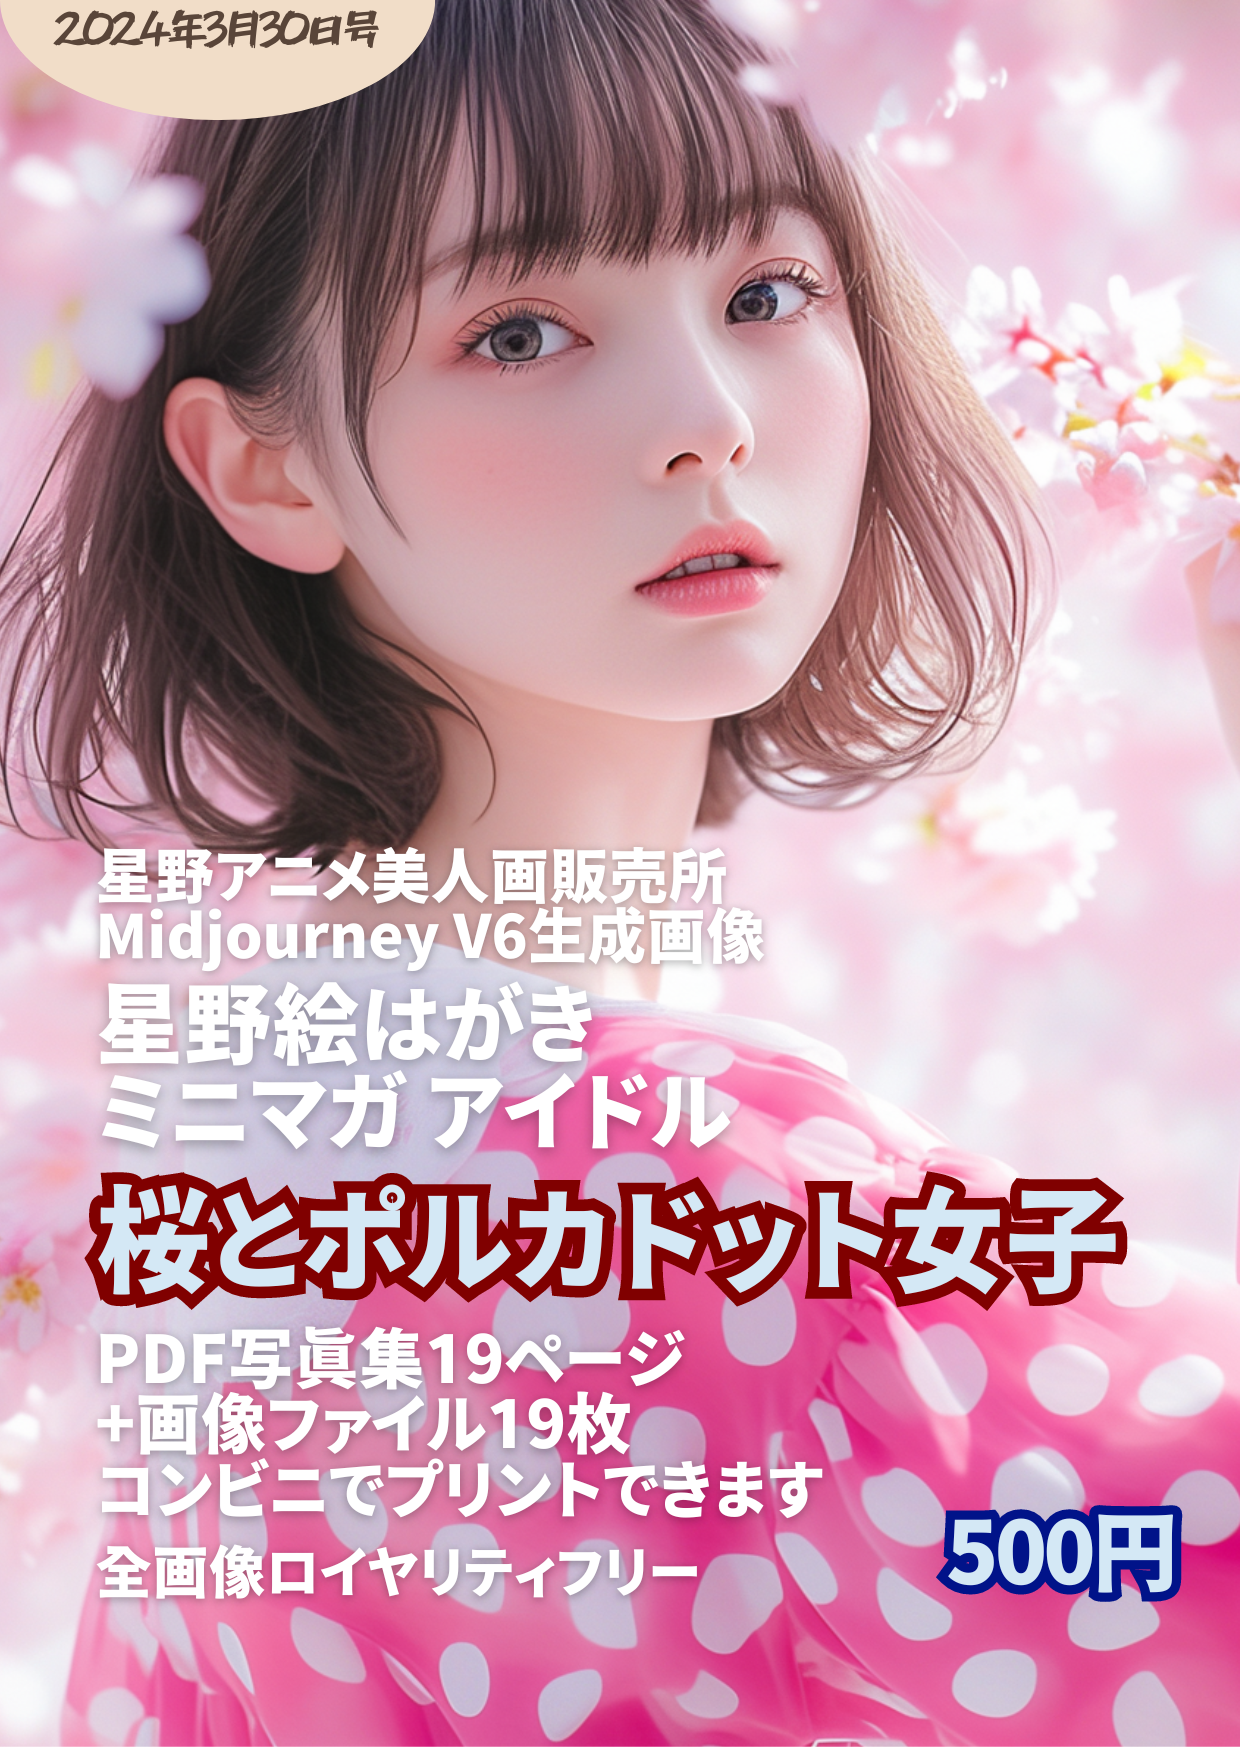 星野絵はがきミニマガ アイドル 2024年3月30日号 桜とポルカドット女子 - セットの画像19枚はコンビニでプリントできます 500円